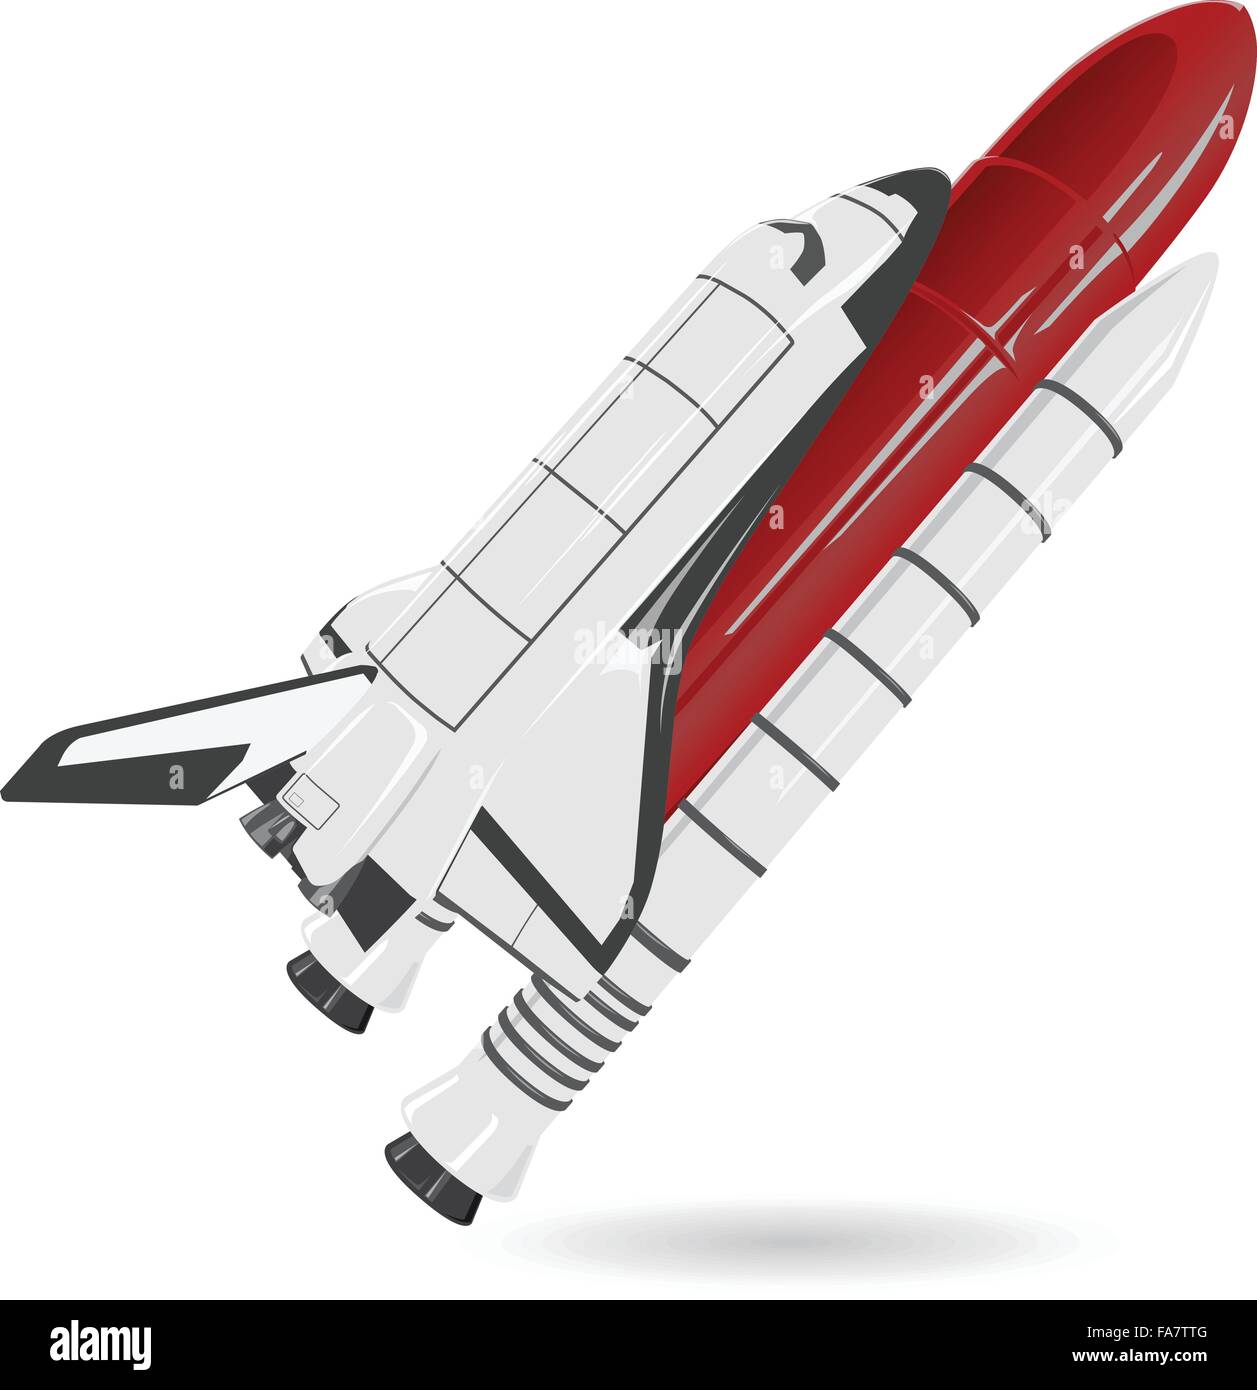 Blanco y rojo sobre blanco del transbordador espacial de Niza - Niza nave de hélice de tanque de combustible - Acoplar ilustración aislada vector principal Ilustración del Vector